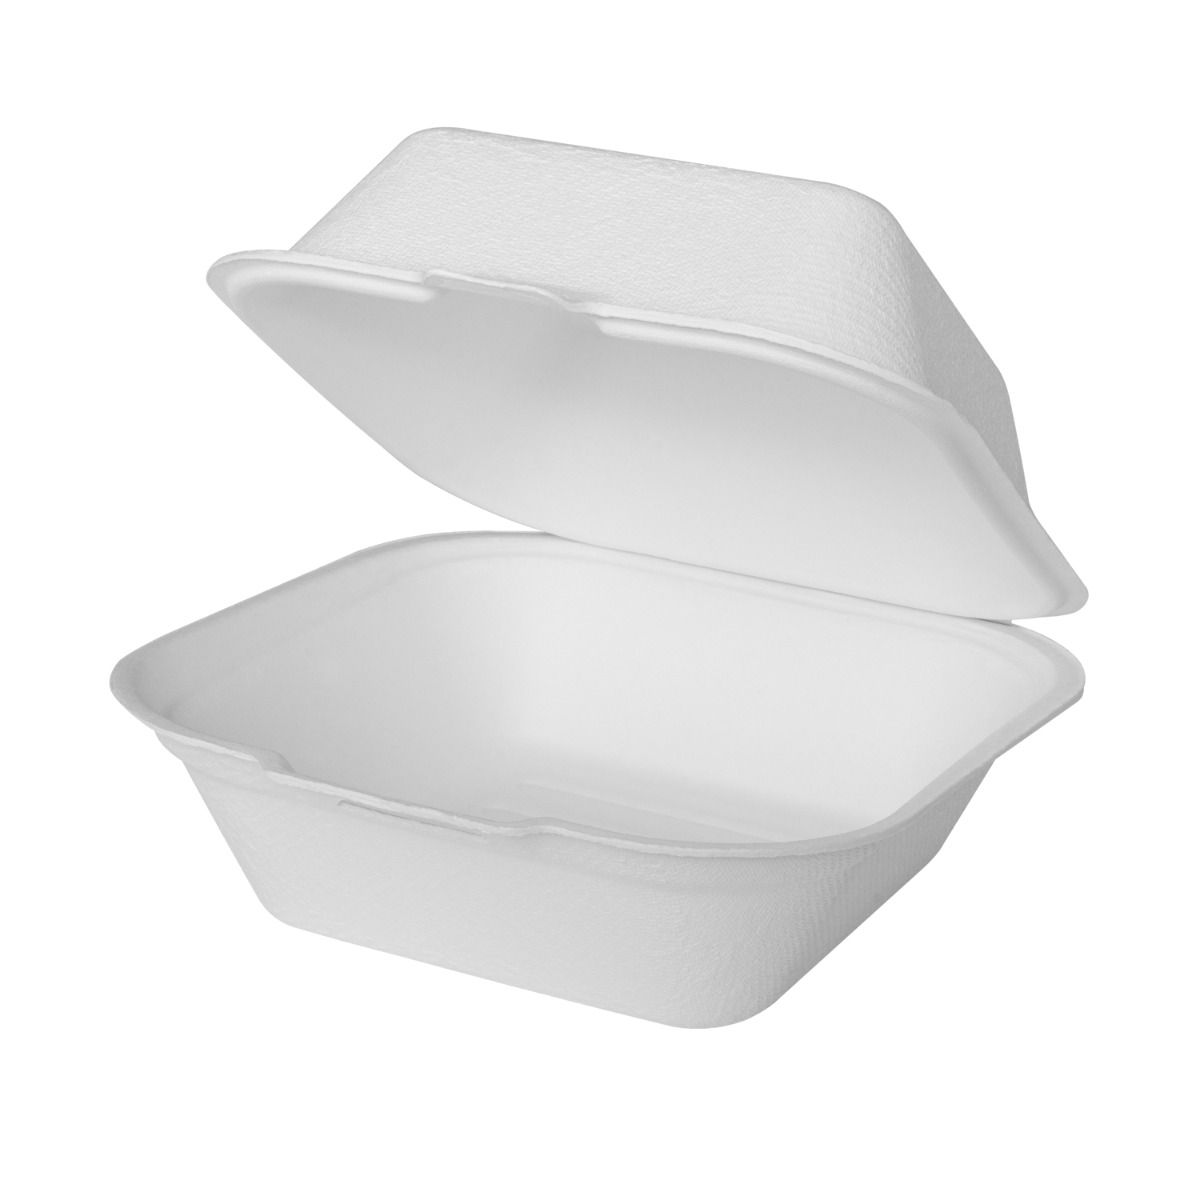 No PFAS added 24 oz. Square Tan Bowls, Case of 300 – CiboWares